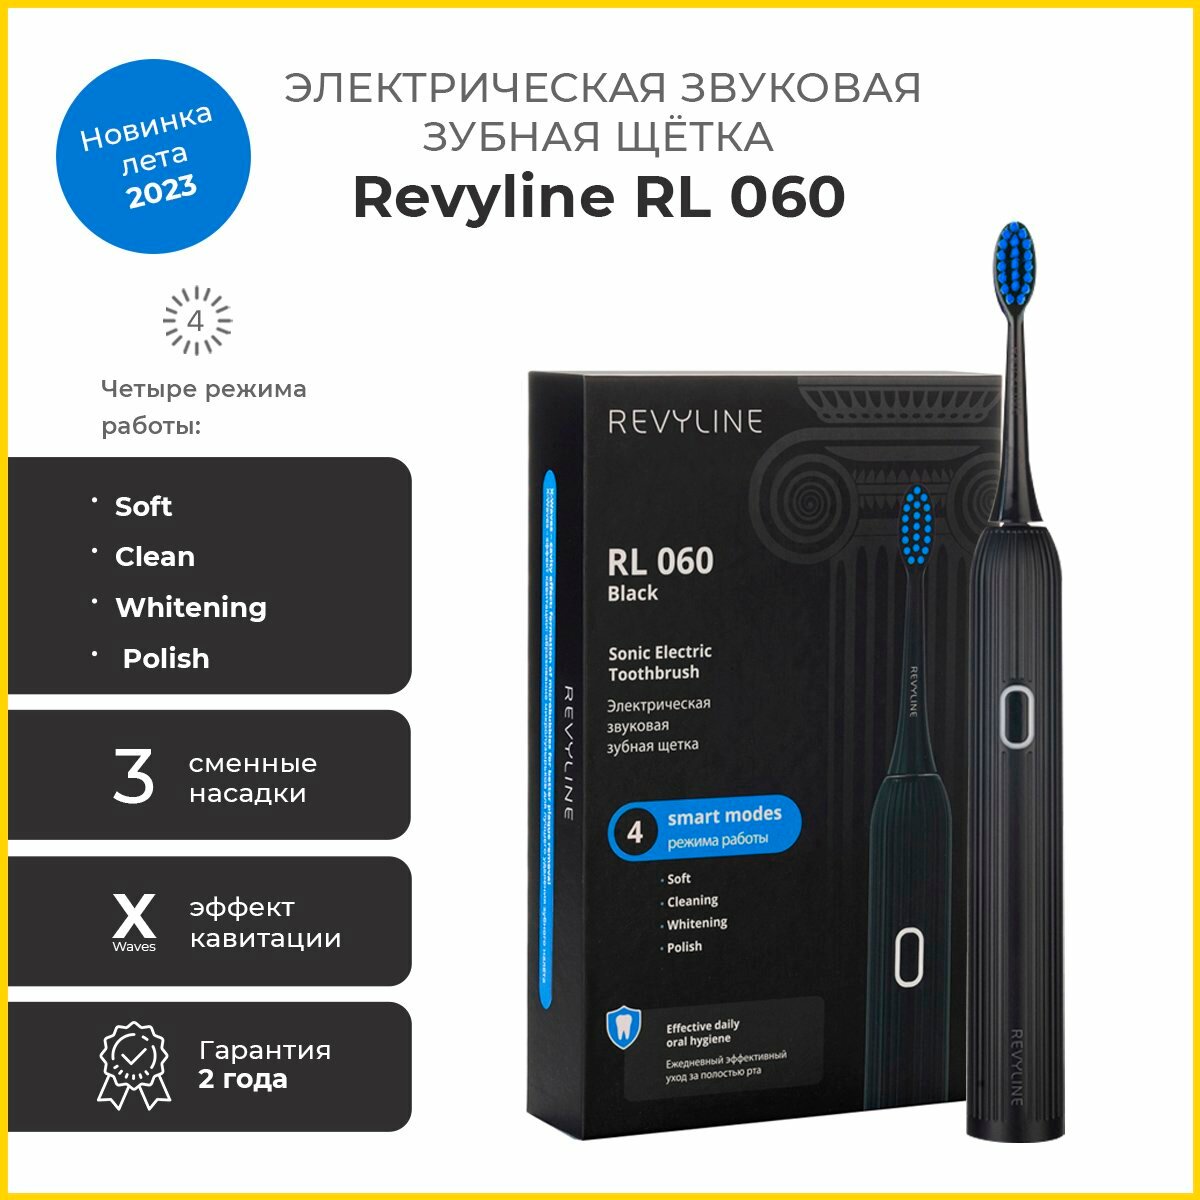 Зубная электрощетка Revyline RL 060 Black 7490